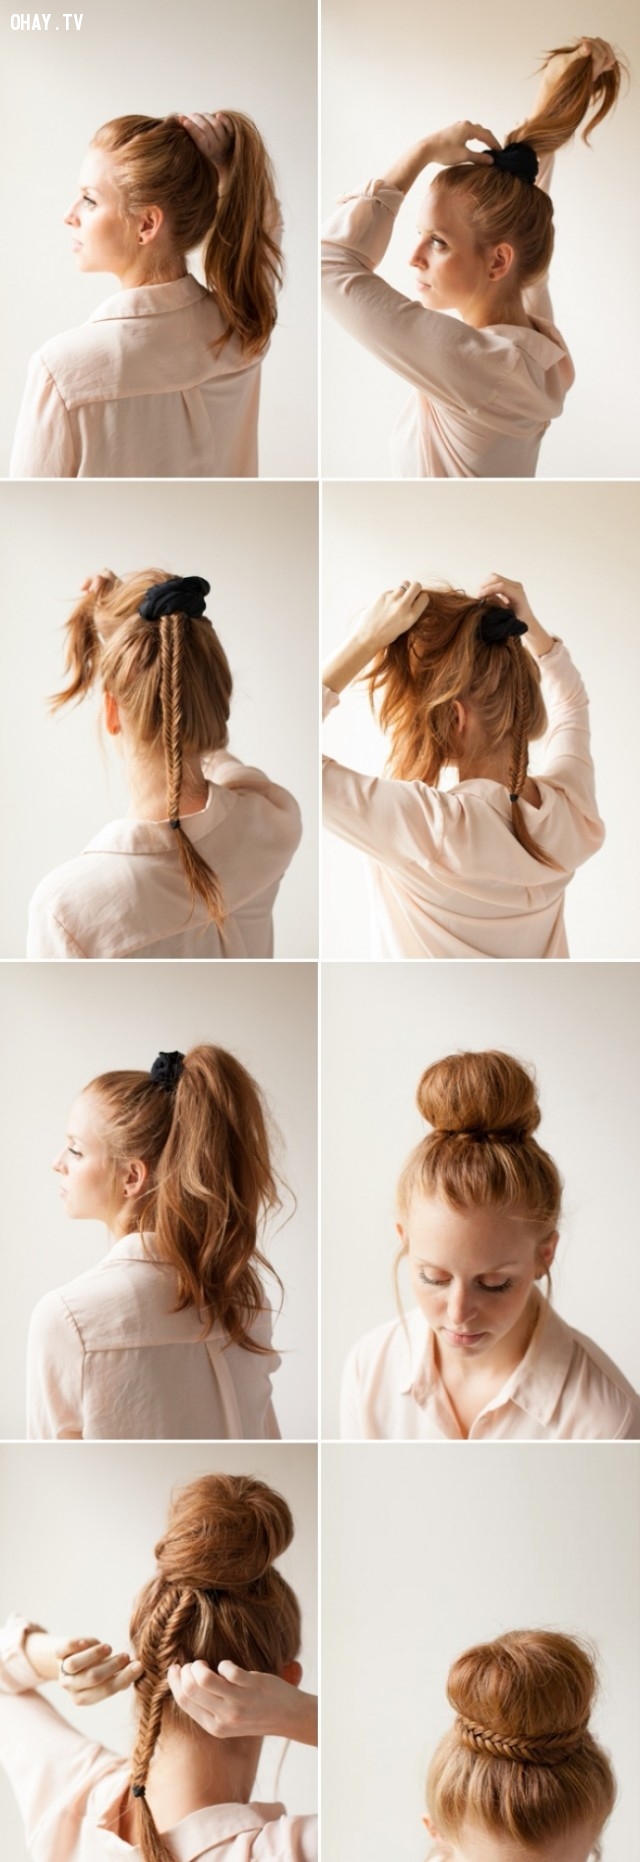 15 cách tạo kiểu tóc đẹp chỉ trong 5 phút